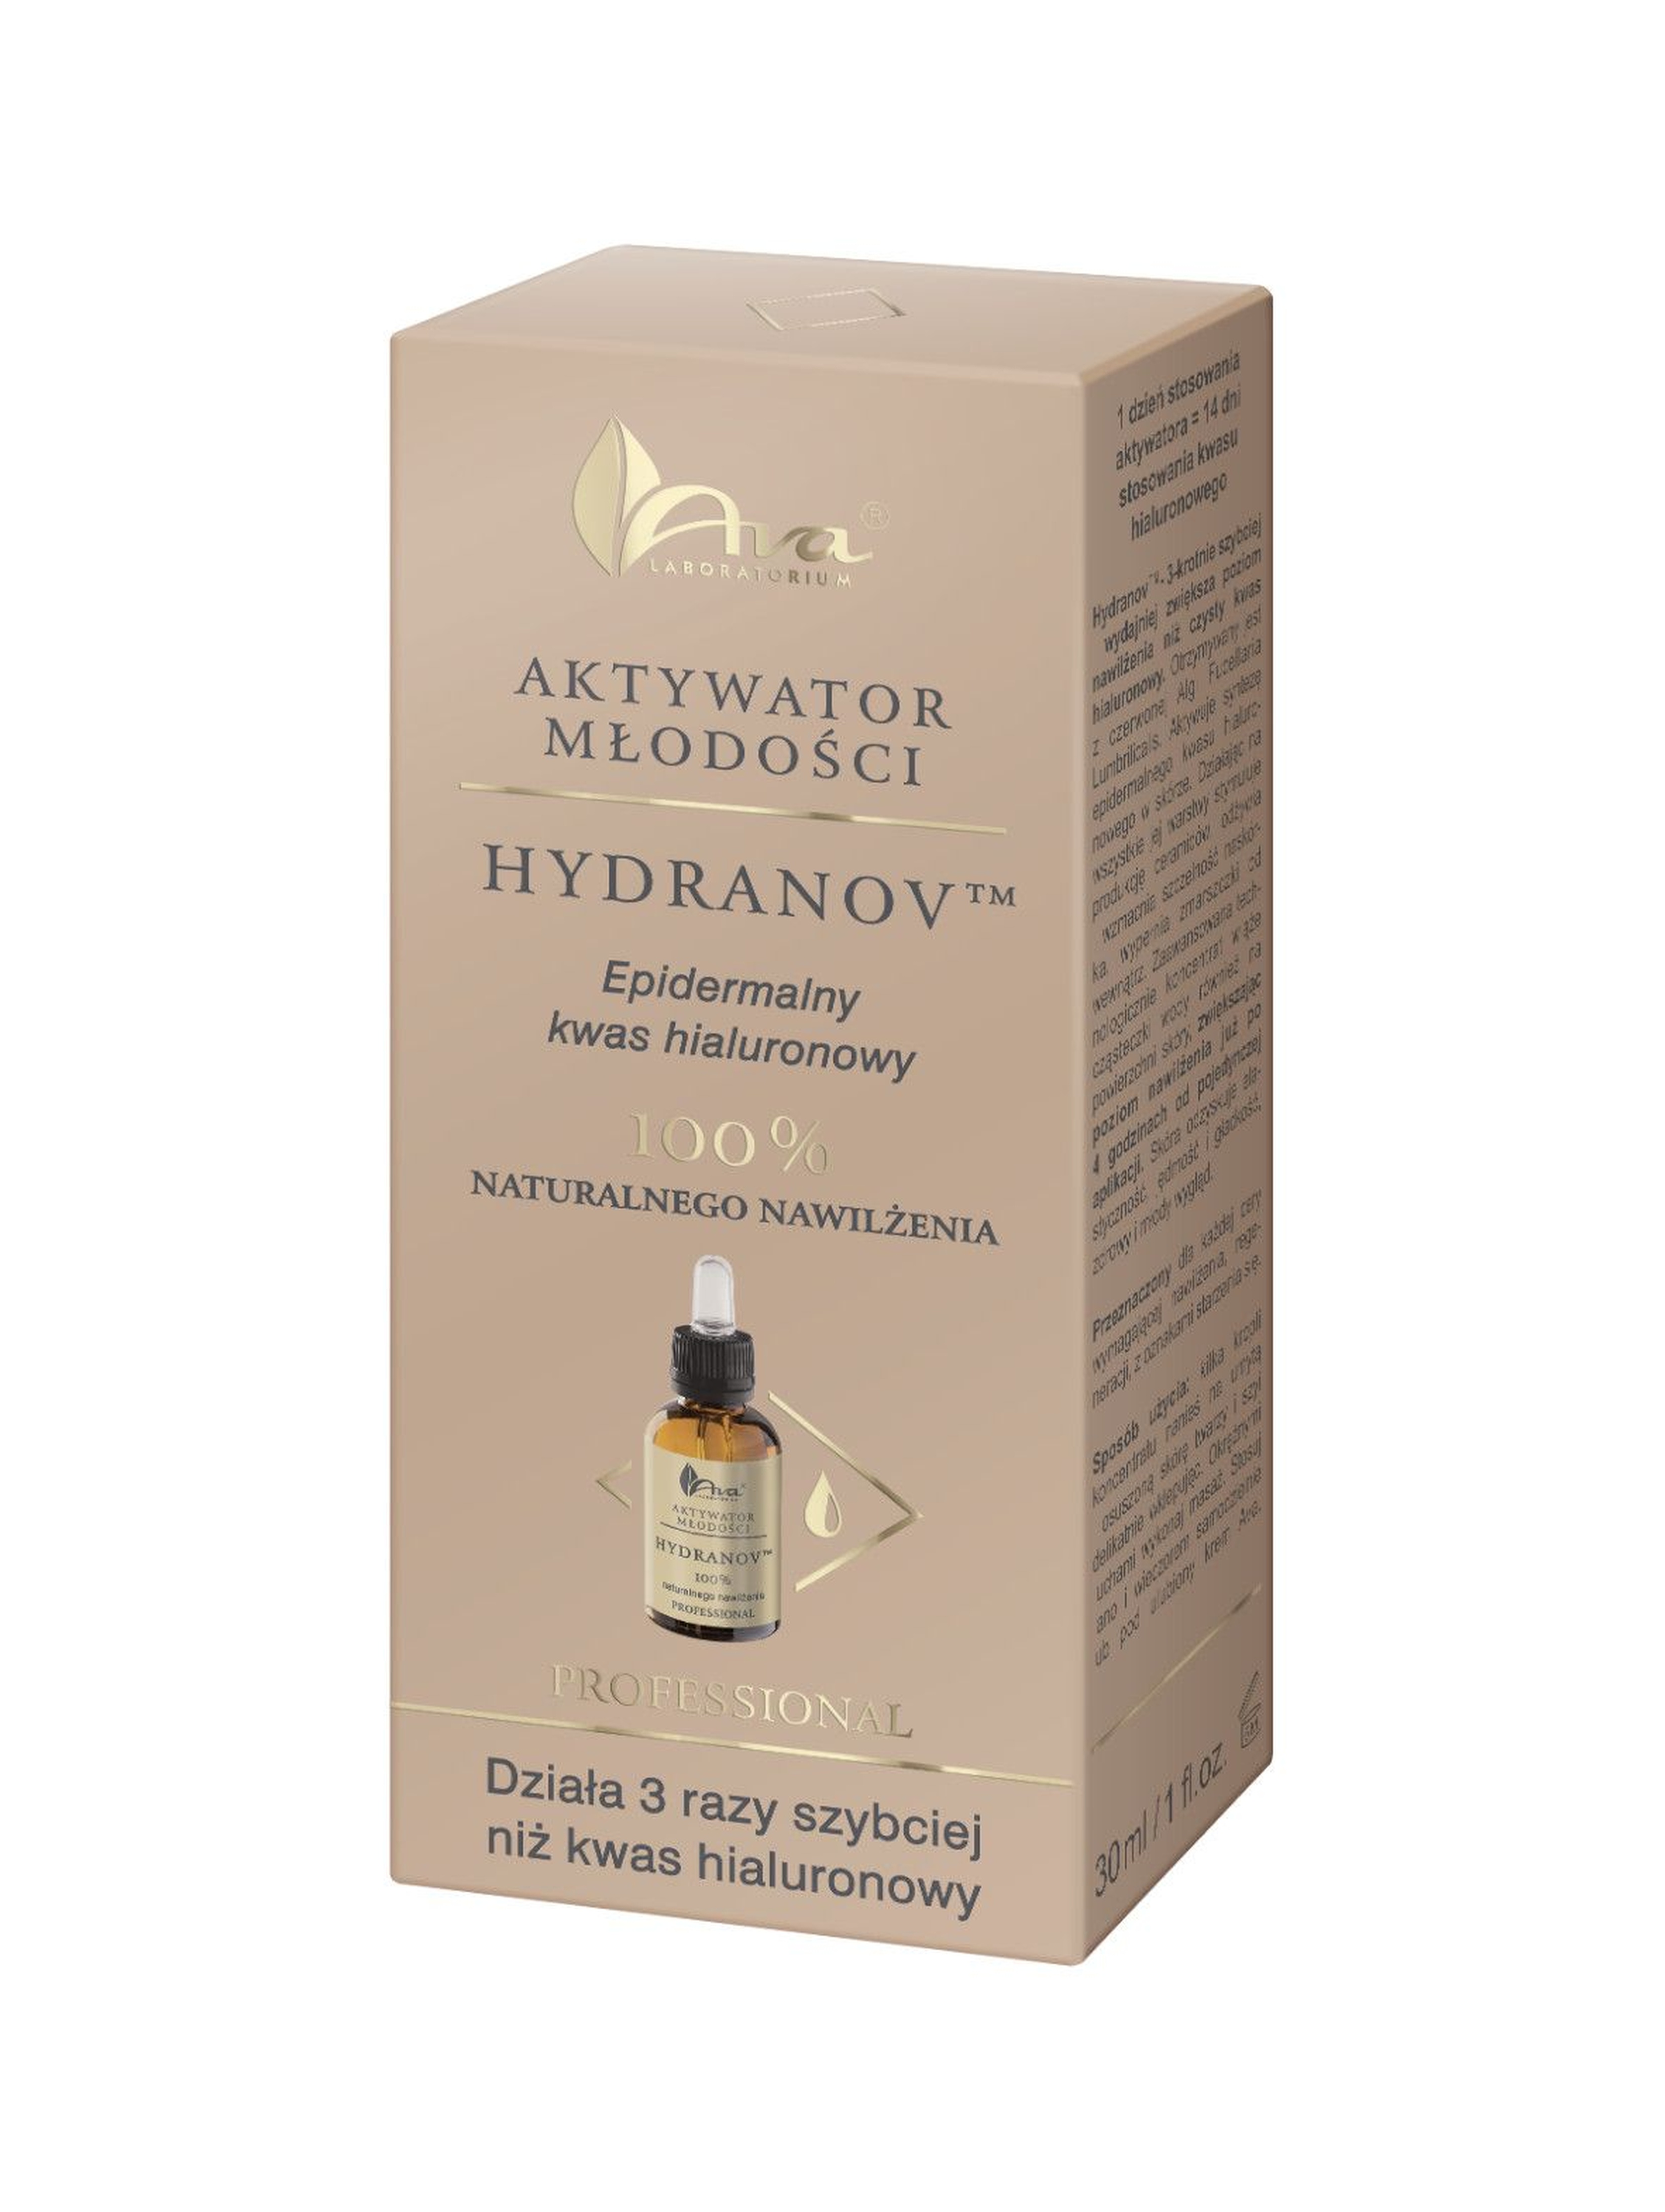 Aktywator do twarzy 100% Hydranov / kwas hialuronowy - Aktywator Młodości - 30 ml